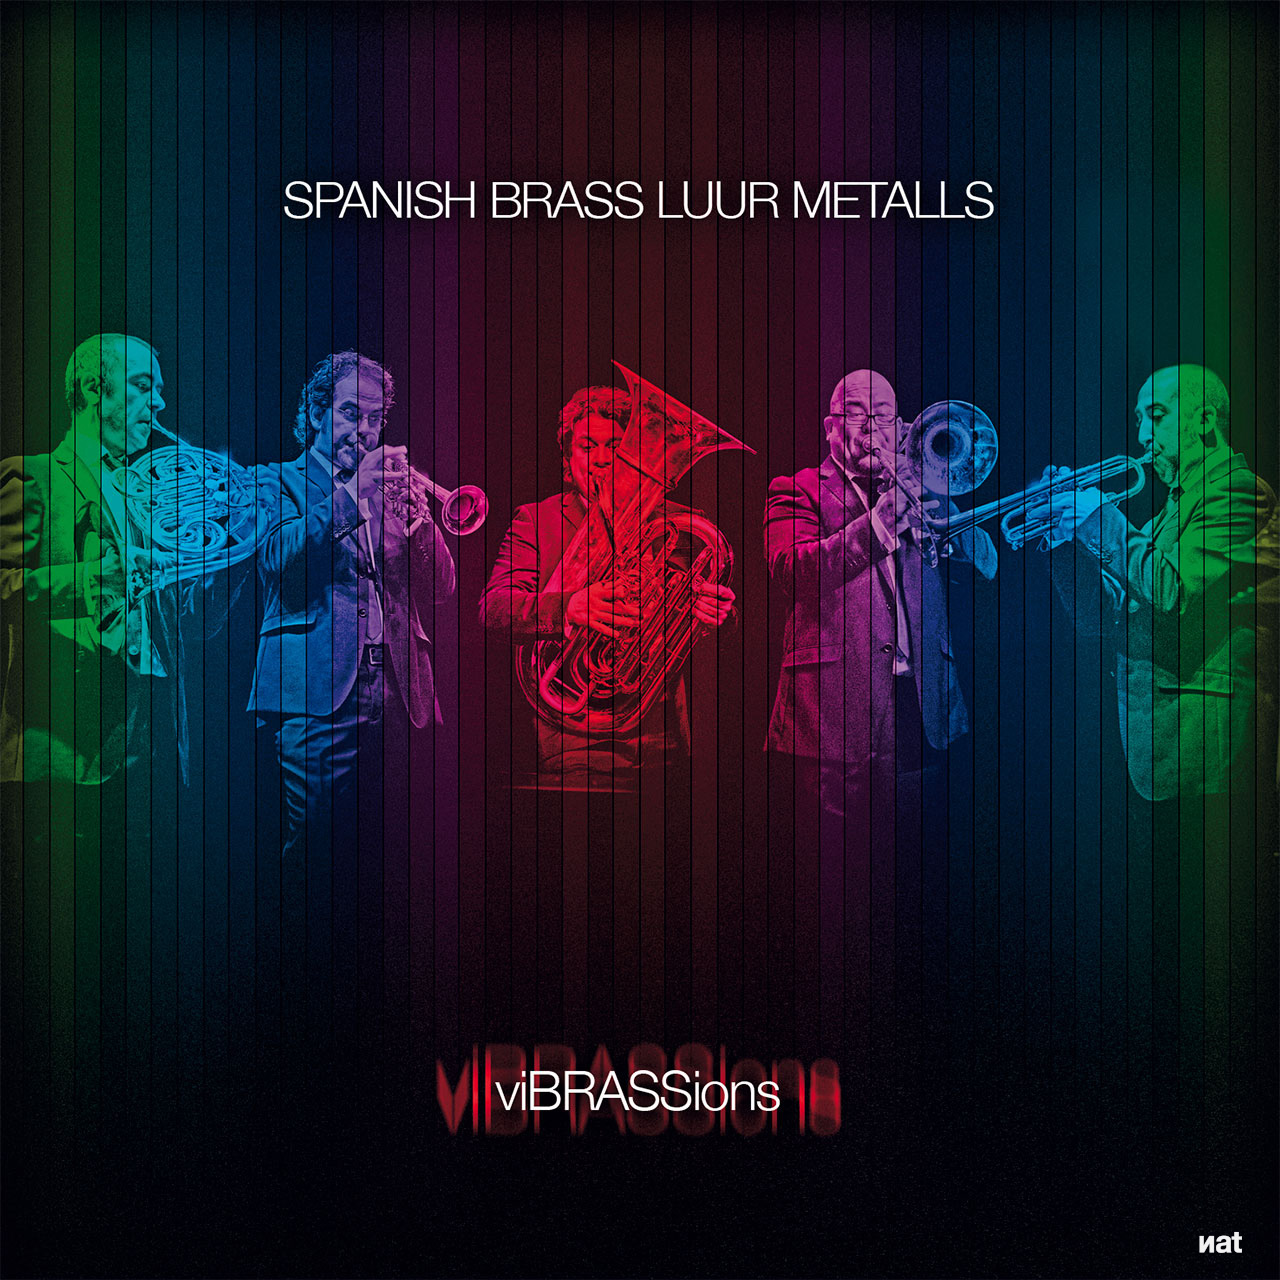 Proyecto de diseño y fotografía para el disco 'viBRASSions' del quinteto de metales Spanish Brass. Diseño Nat Estudi.